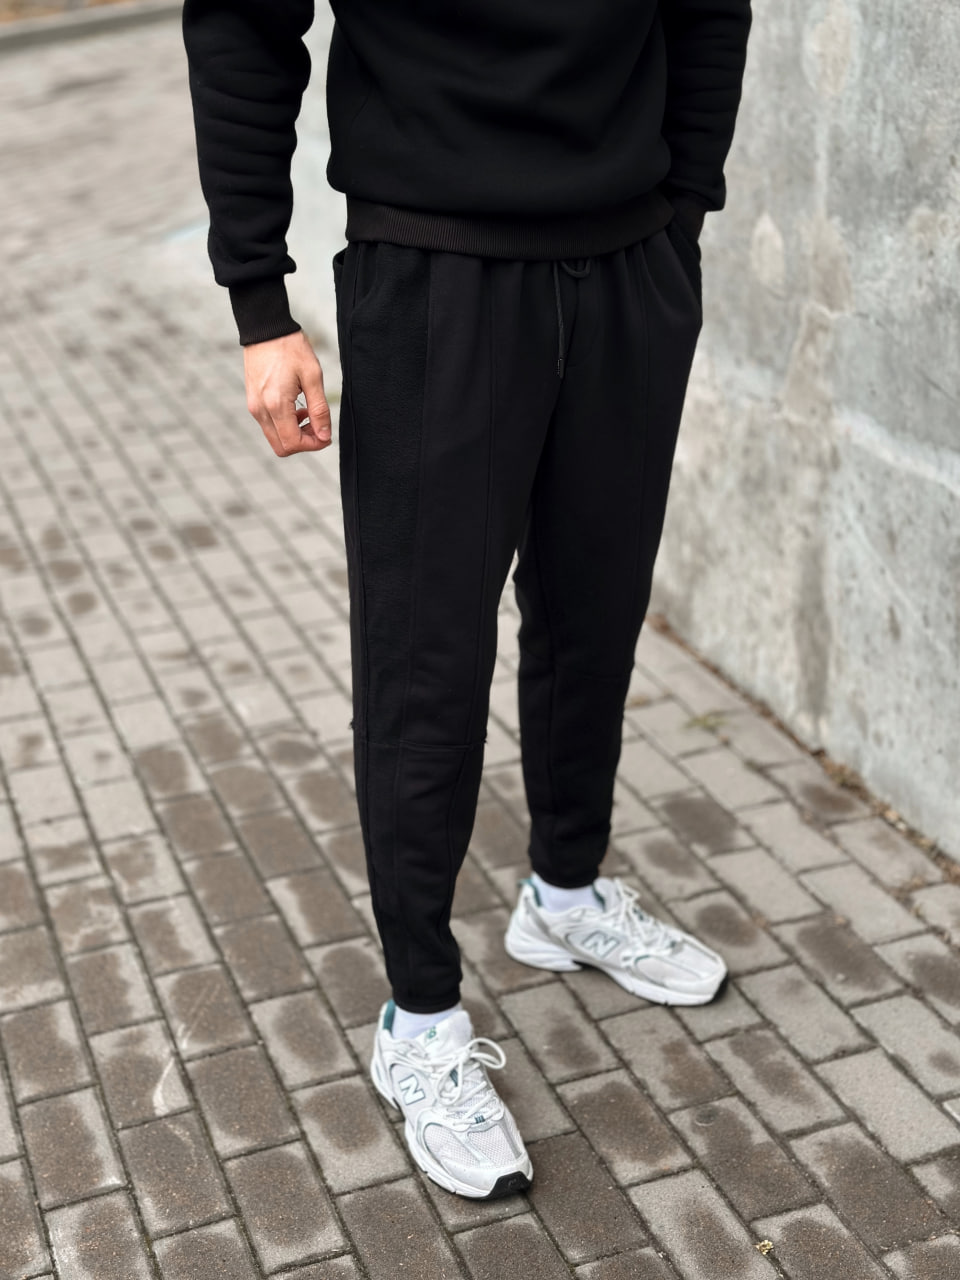 Чоловічі спортивні штани трикотажні Reload Rough чорні / Спортивки завуженні стильні демісезонні - Фото 3